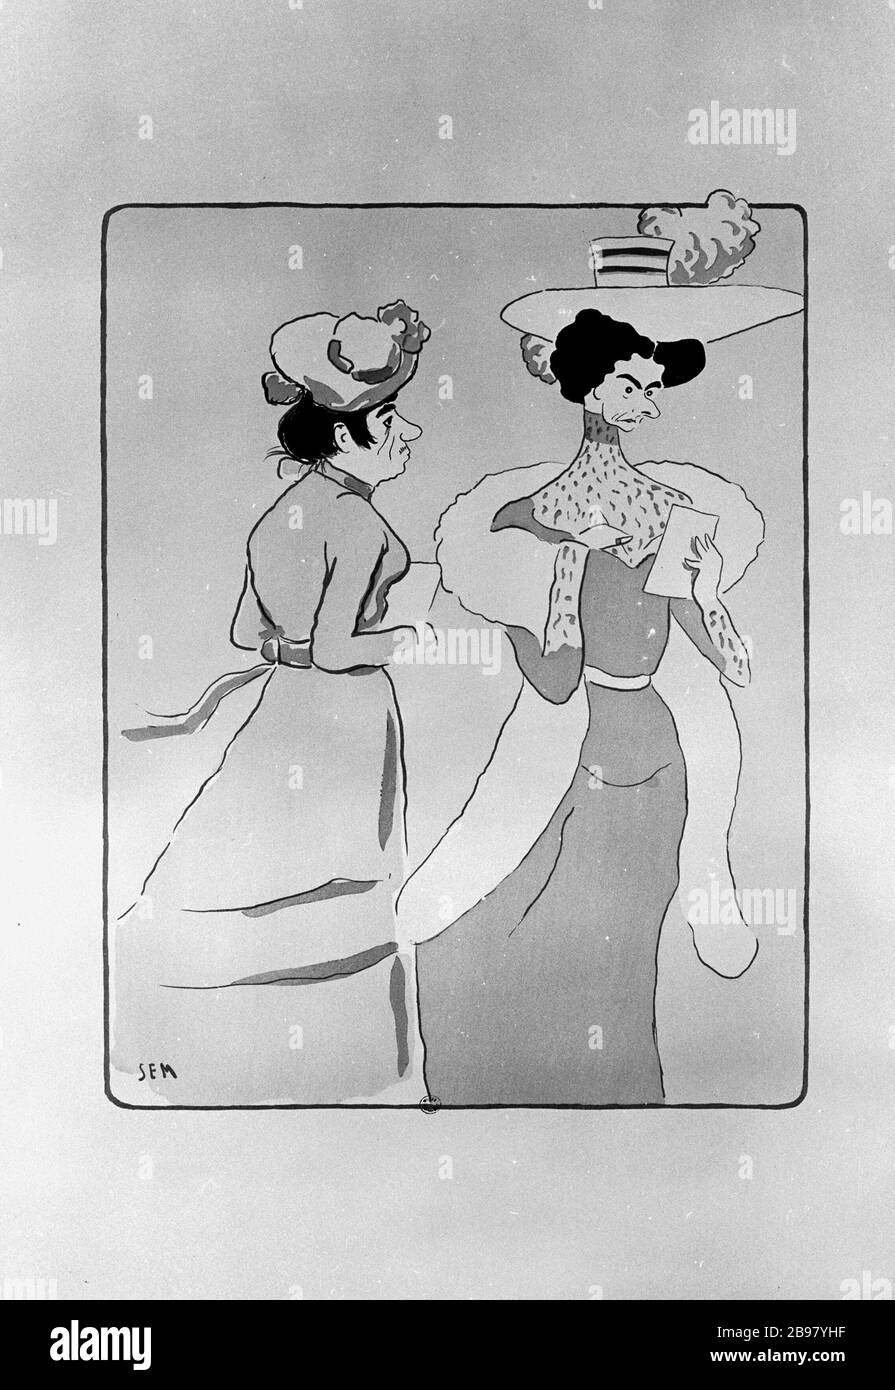 ALBUM BLANC, STAMP ROUX: HORREUR DES FEMMES LAIDES SEM (1863-1934). 'Album blanc, cachet roux : l'horeur des femmes laides'. Lithographie en couleurs, 1901. Paris, musée Carnavalet. Banque D'Images